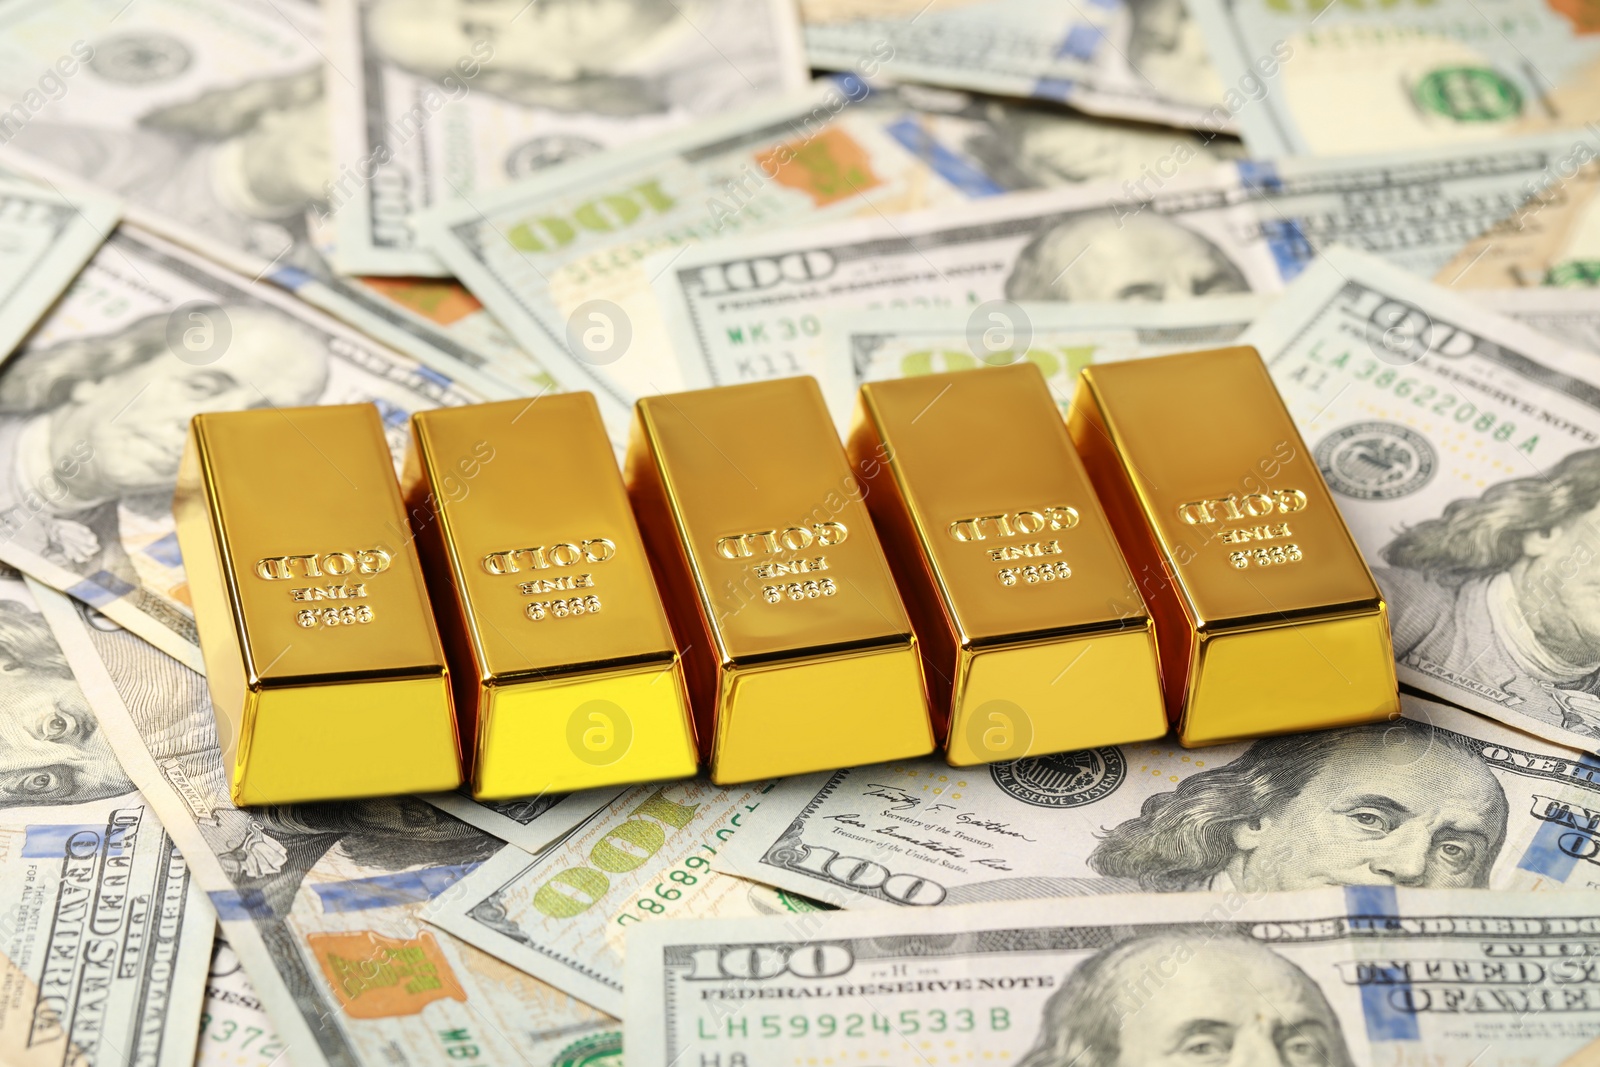 Photo of Many shiny gold bars on dollar banknotes